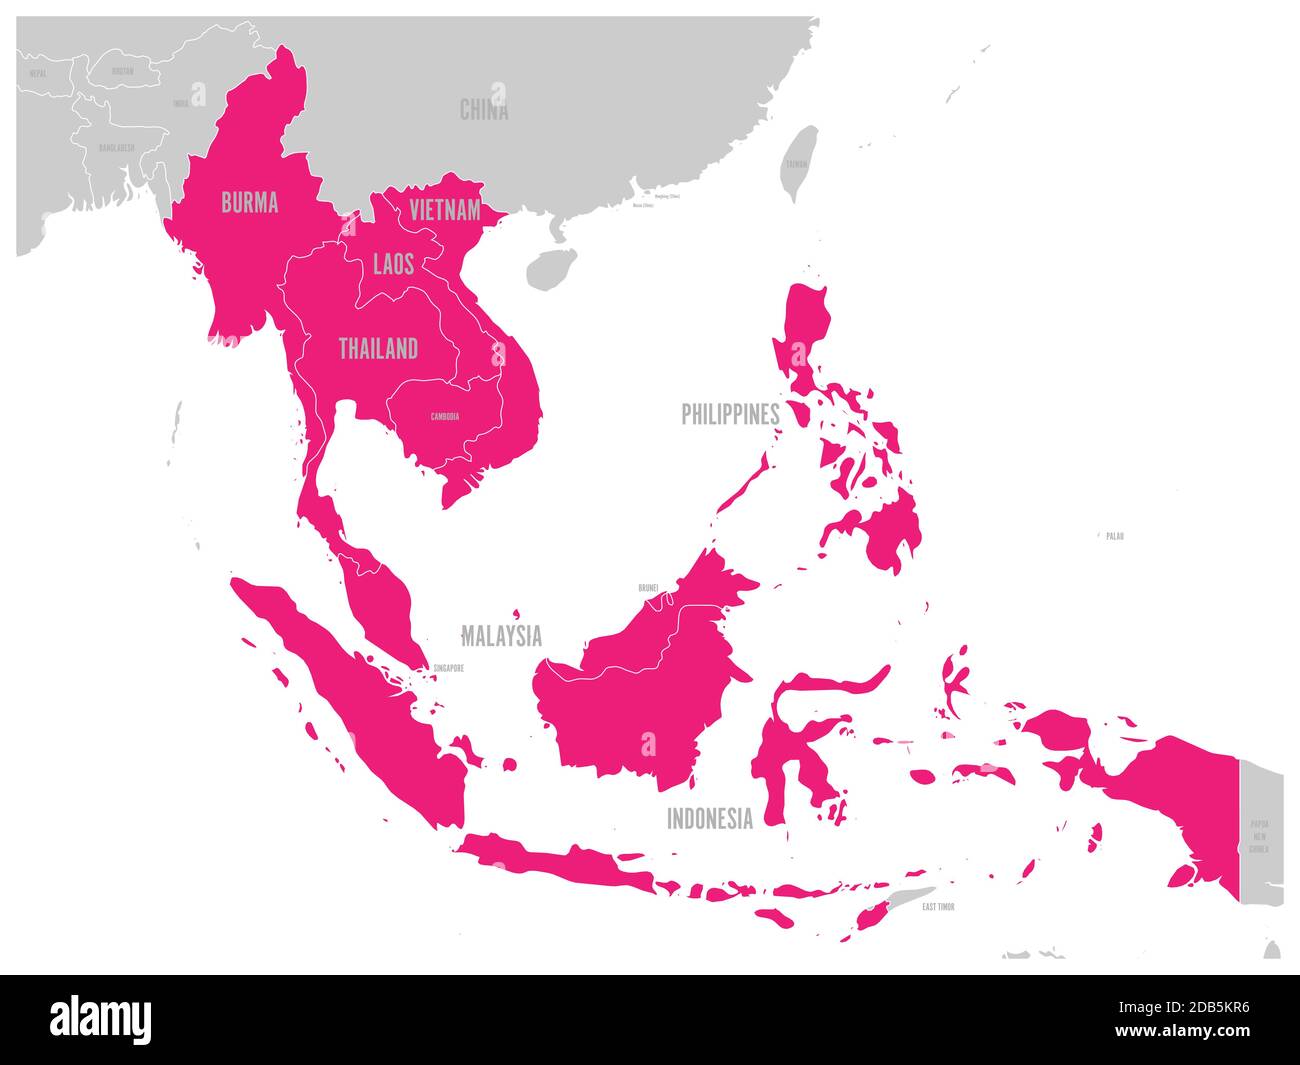 Comunità economica ASEAN, AEC, mappa. Mappa grigia con i paesi membri evidenziati in rosa, Sud-est asiatico. Illustrazione vettoriale. Illustrazione Vettoriale